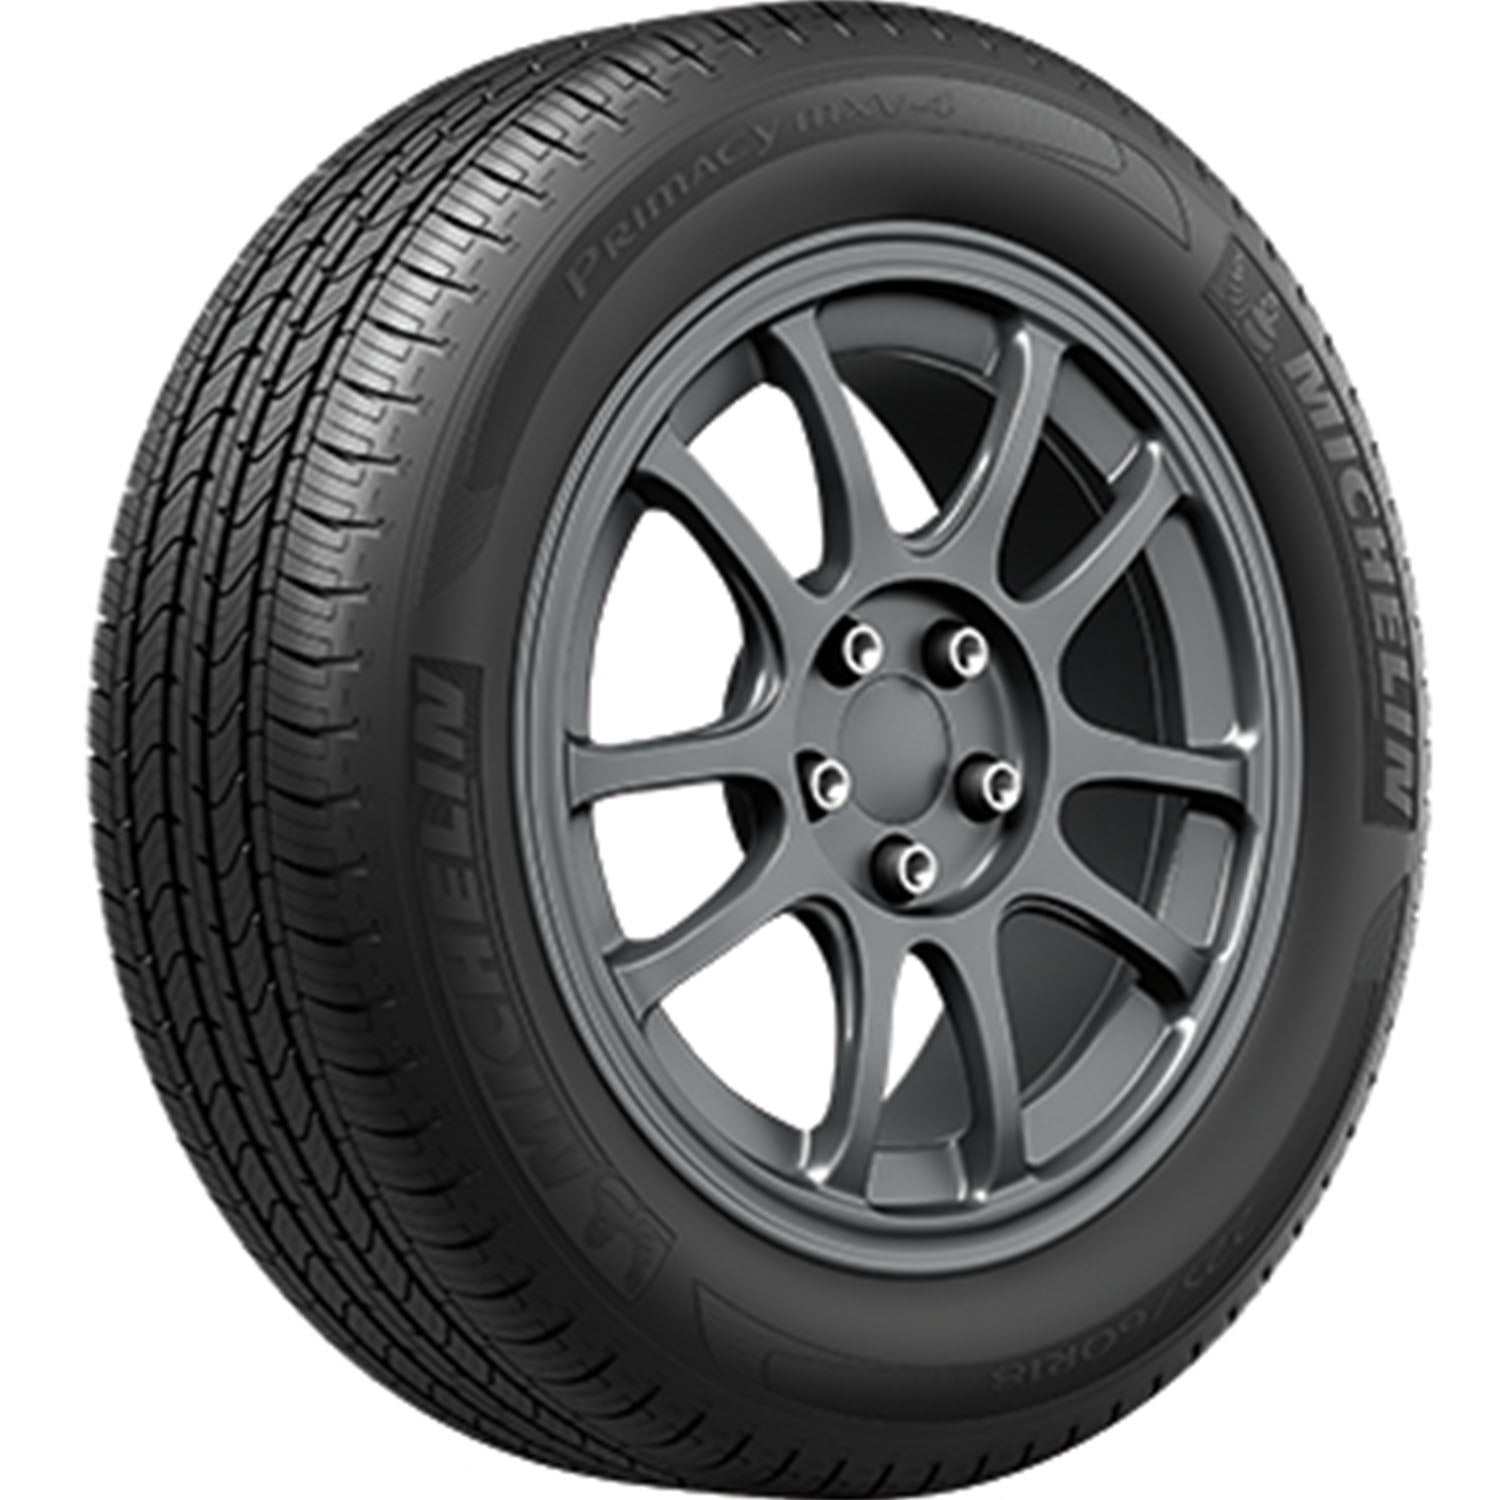 Michelin Primacy MXV4 All-Season 215/55R17 94V Tire Fits: 2011-15 Chevrolet  Cruze Eco